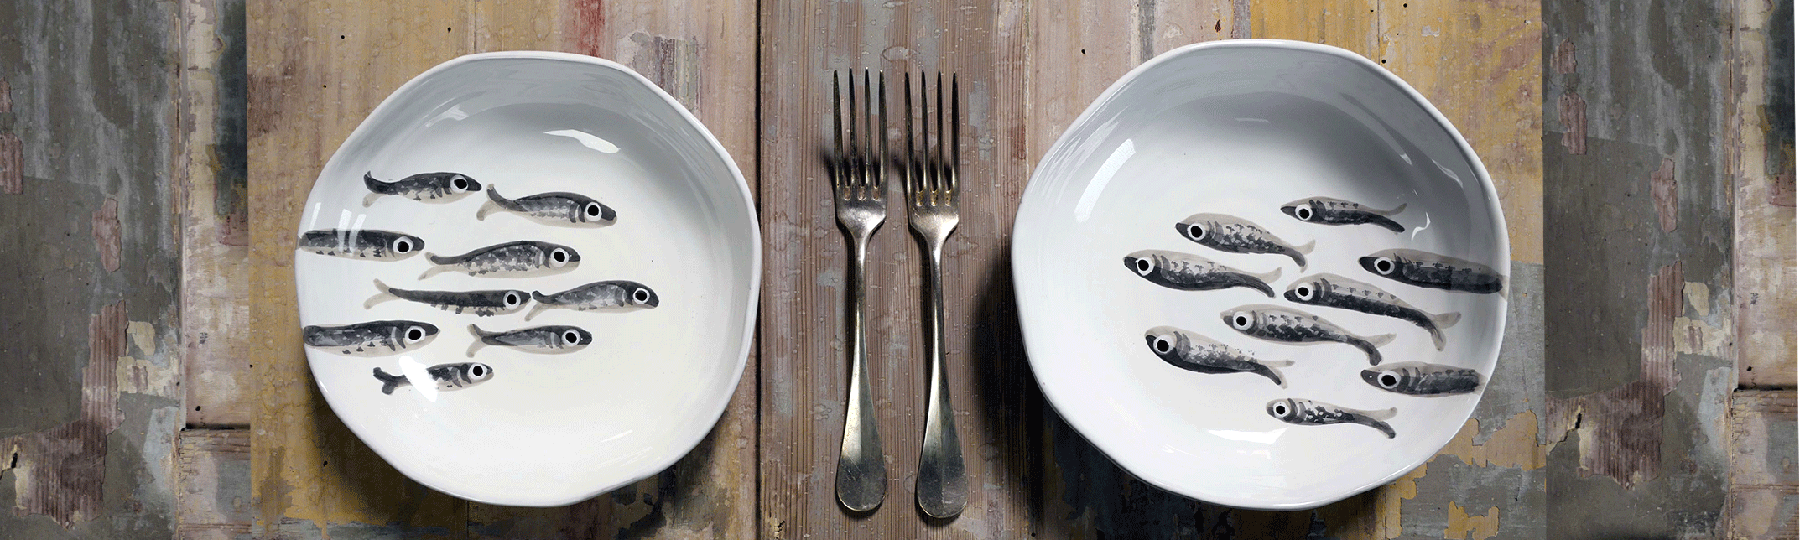 piatti bianchi con disegni di pesci grigi e forchette su tavolo in legno